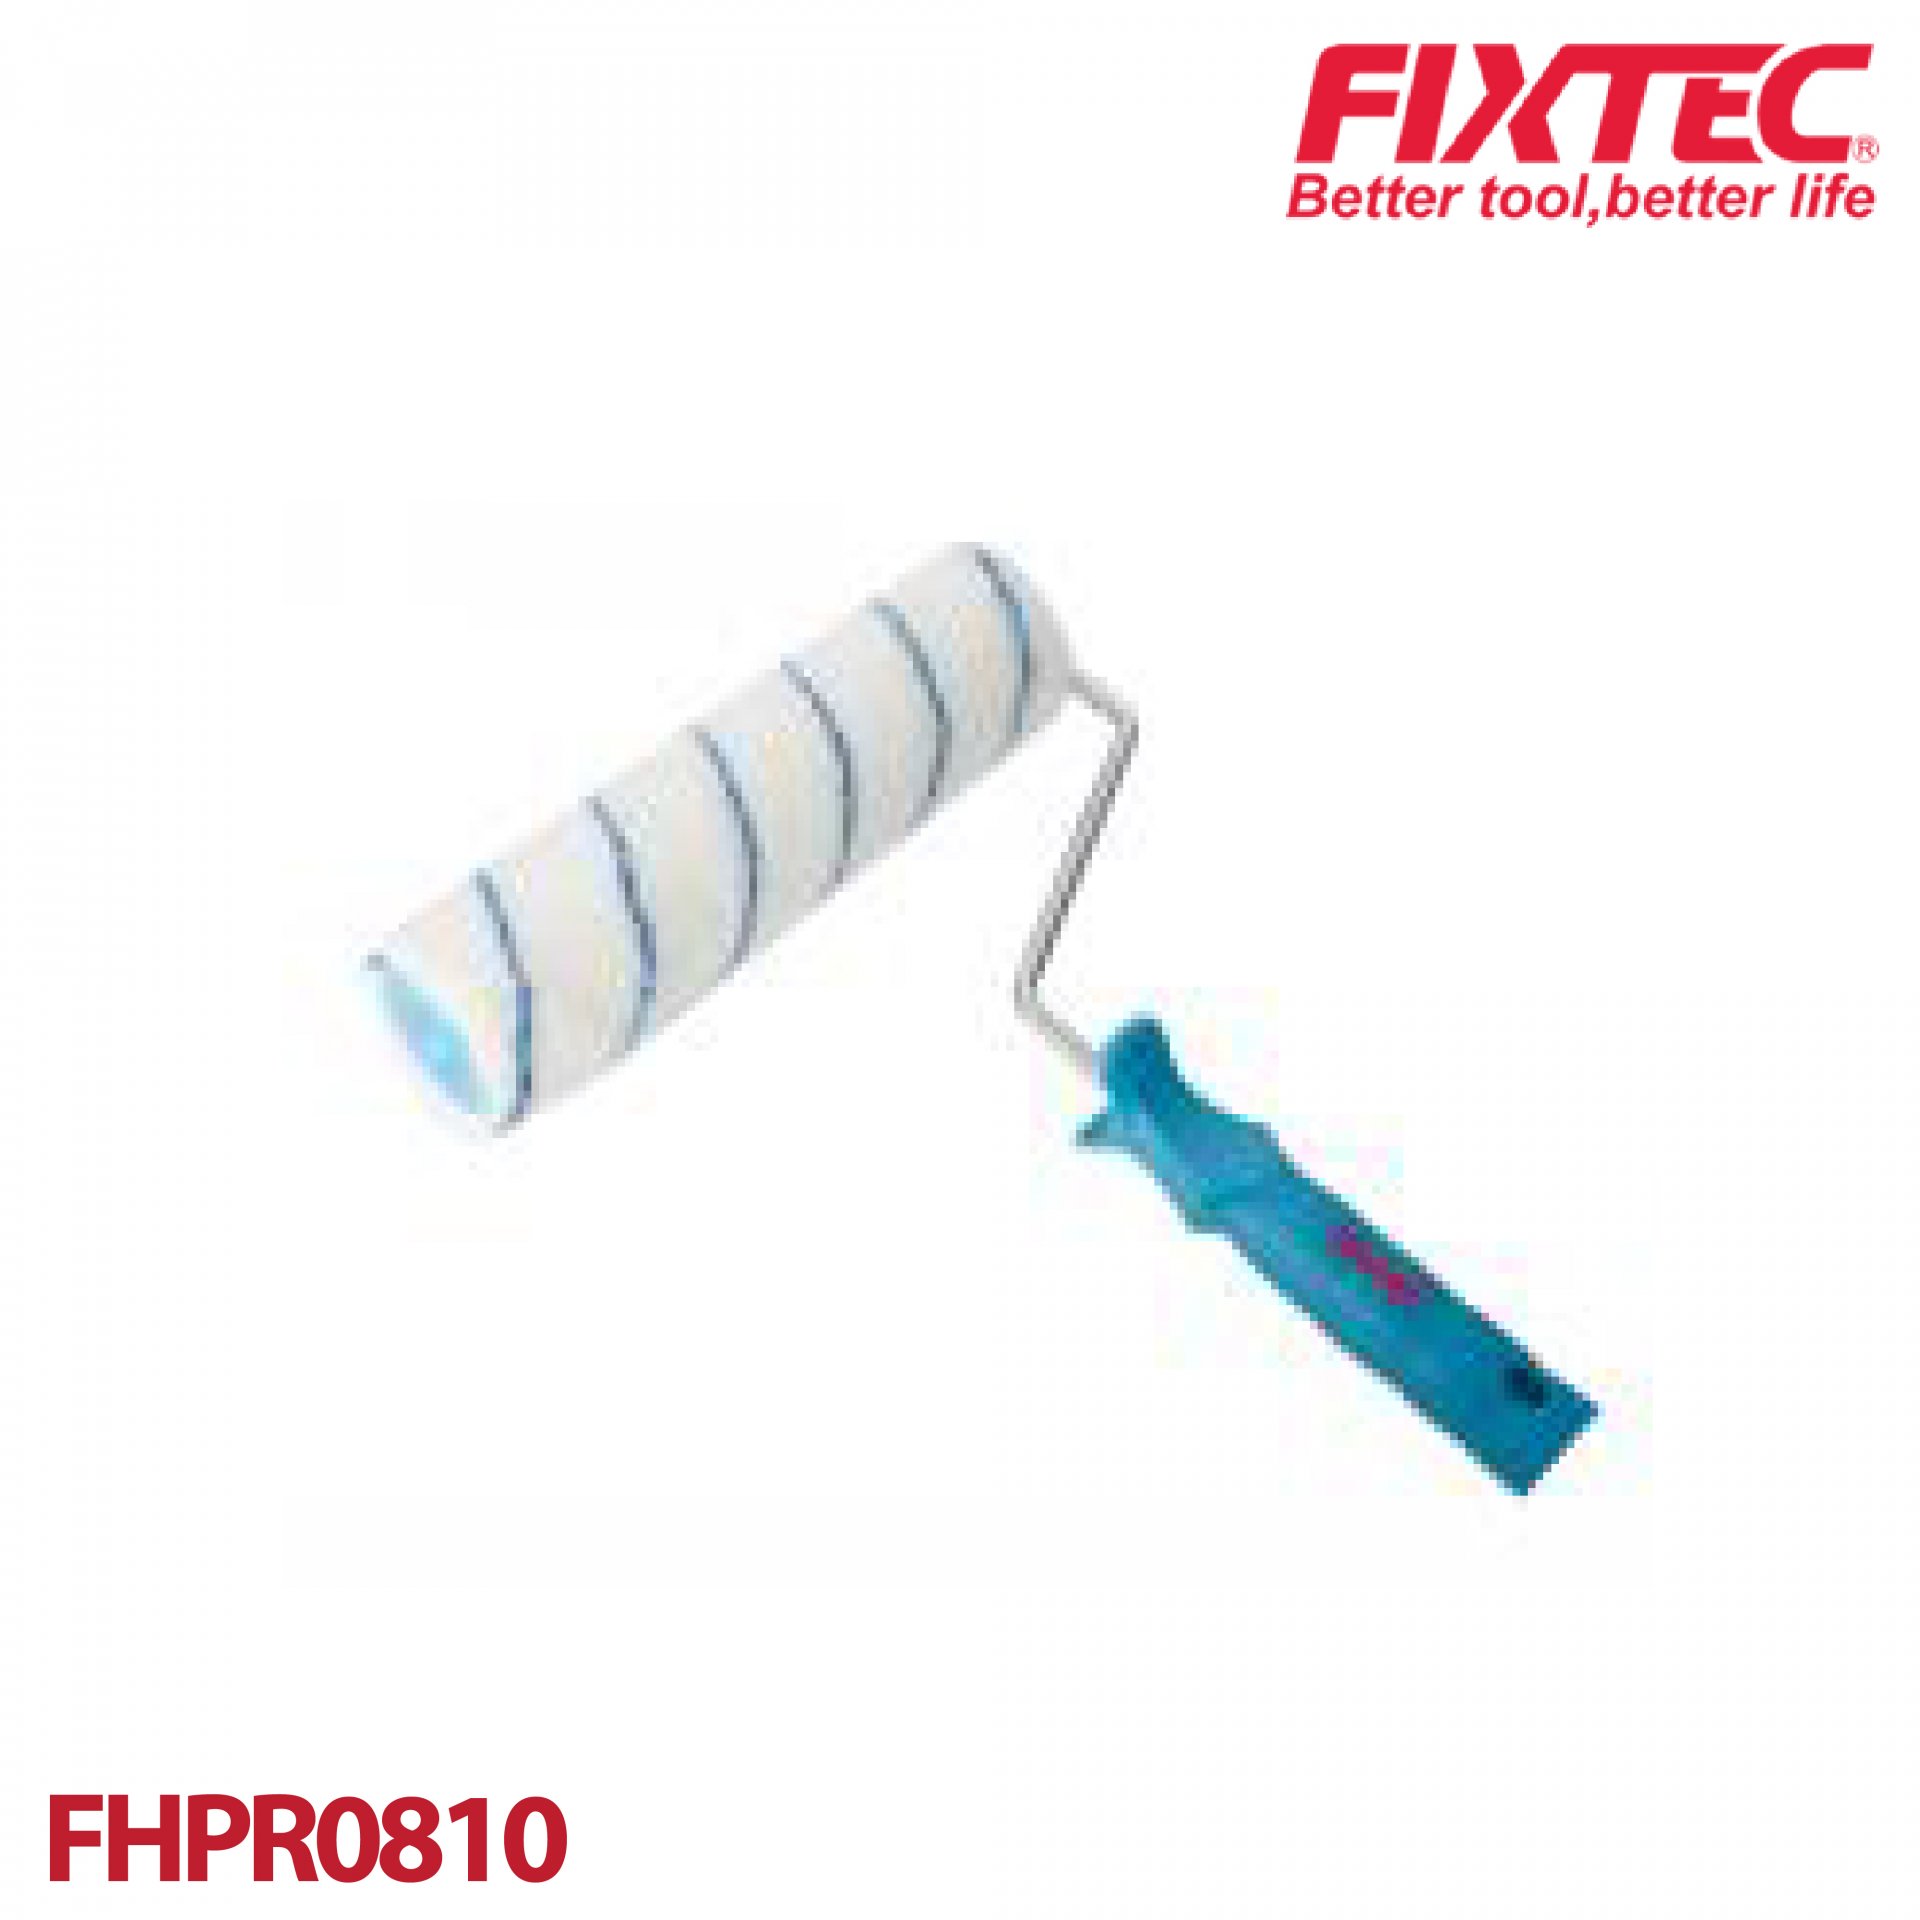 ลูกกลิ้งทาสี 10" FIXTEC รุ่น FHPR0810